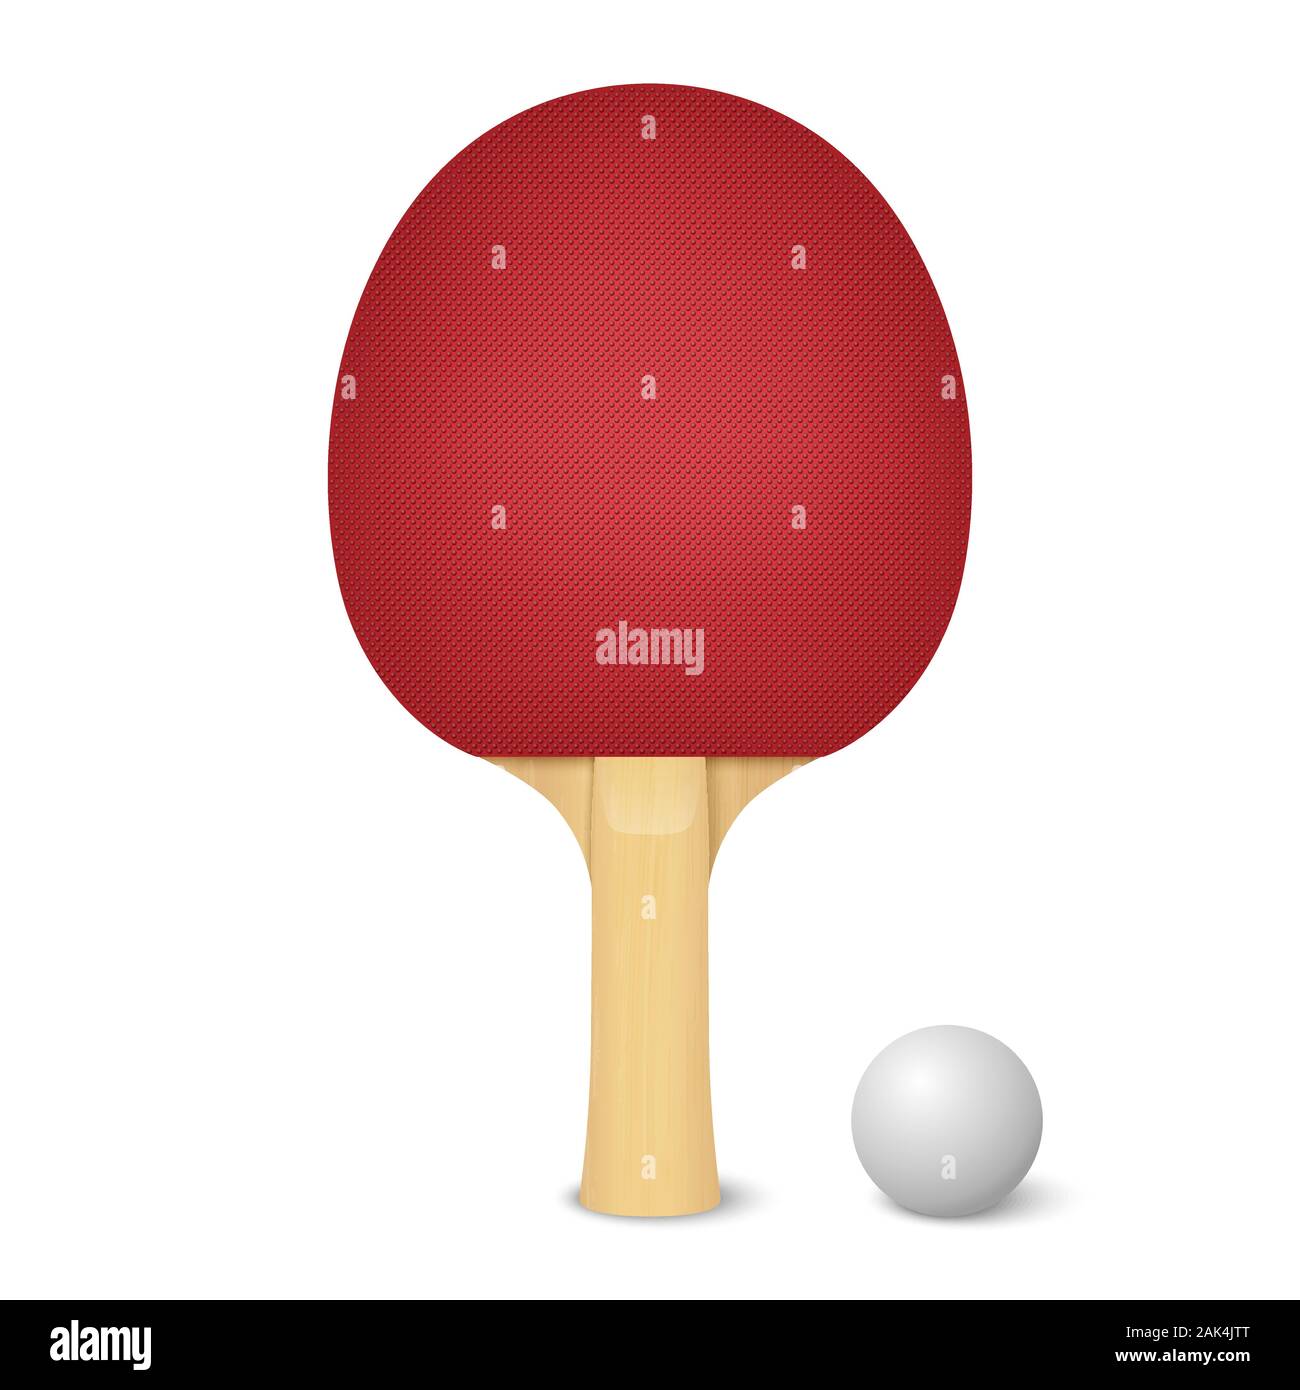 Plantilla de maqueta para raquetas de ping pong, Mockups de producto  Incluyendo: modelo y ping pong - Envato Elements